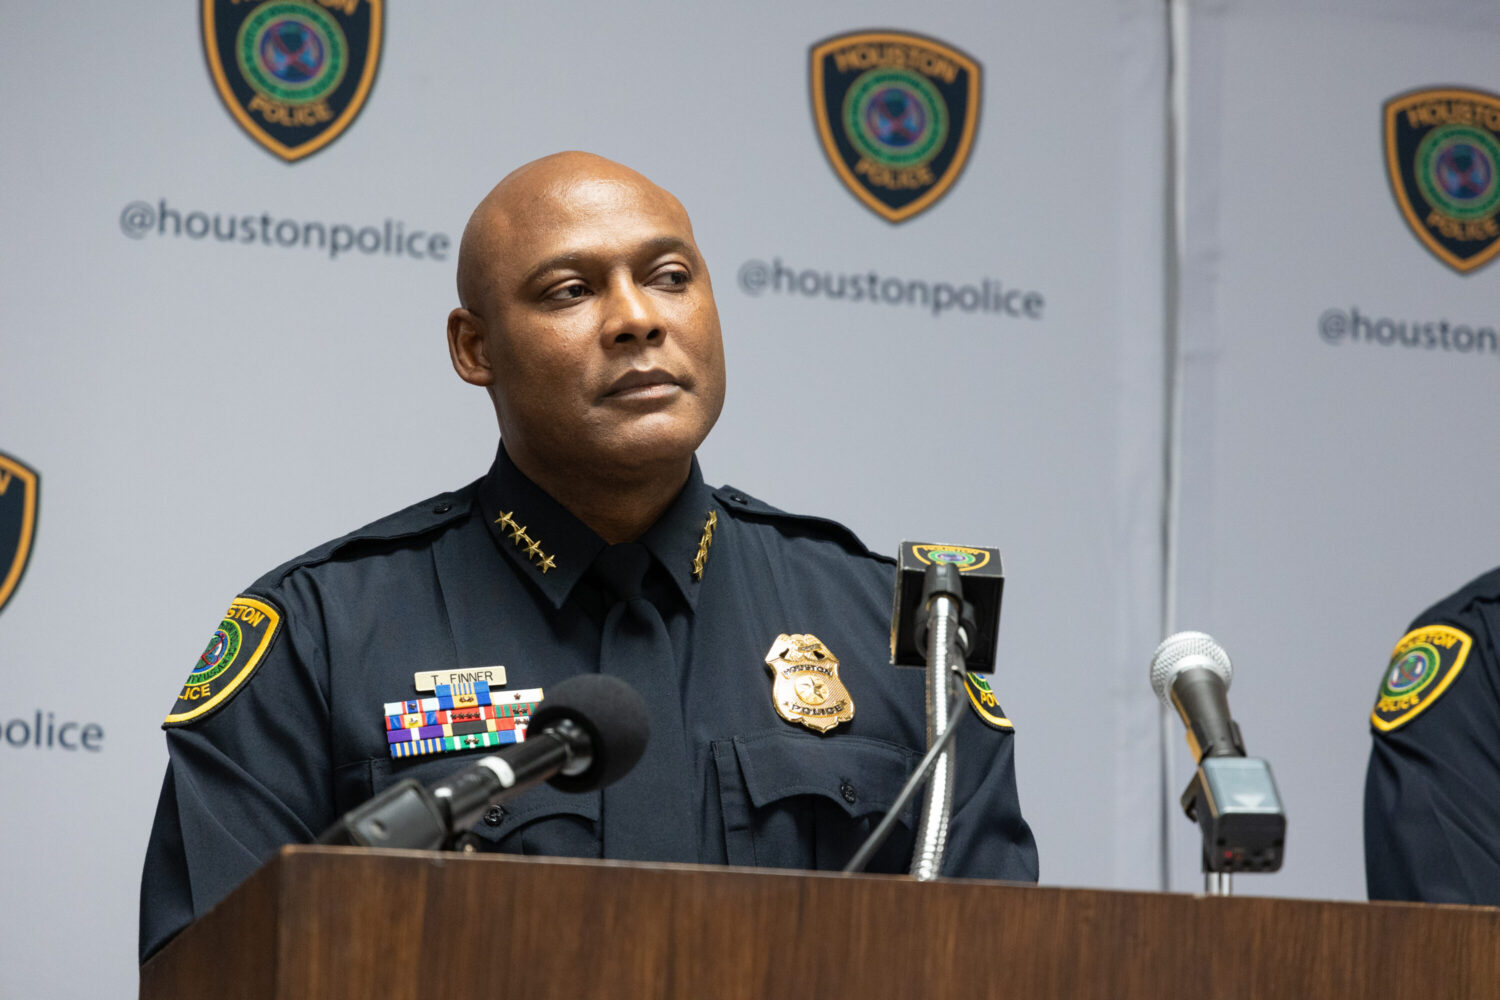 Le chef de la police de Houston, Troy Finner, a pris sa retraite au milieu d’un différend sur des affaires suspendues, selon le maire – Houston Public Media